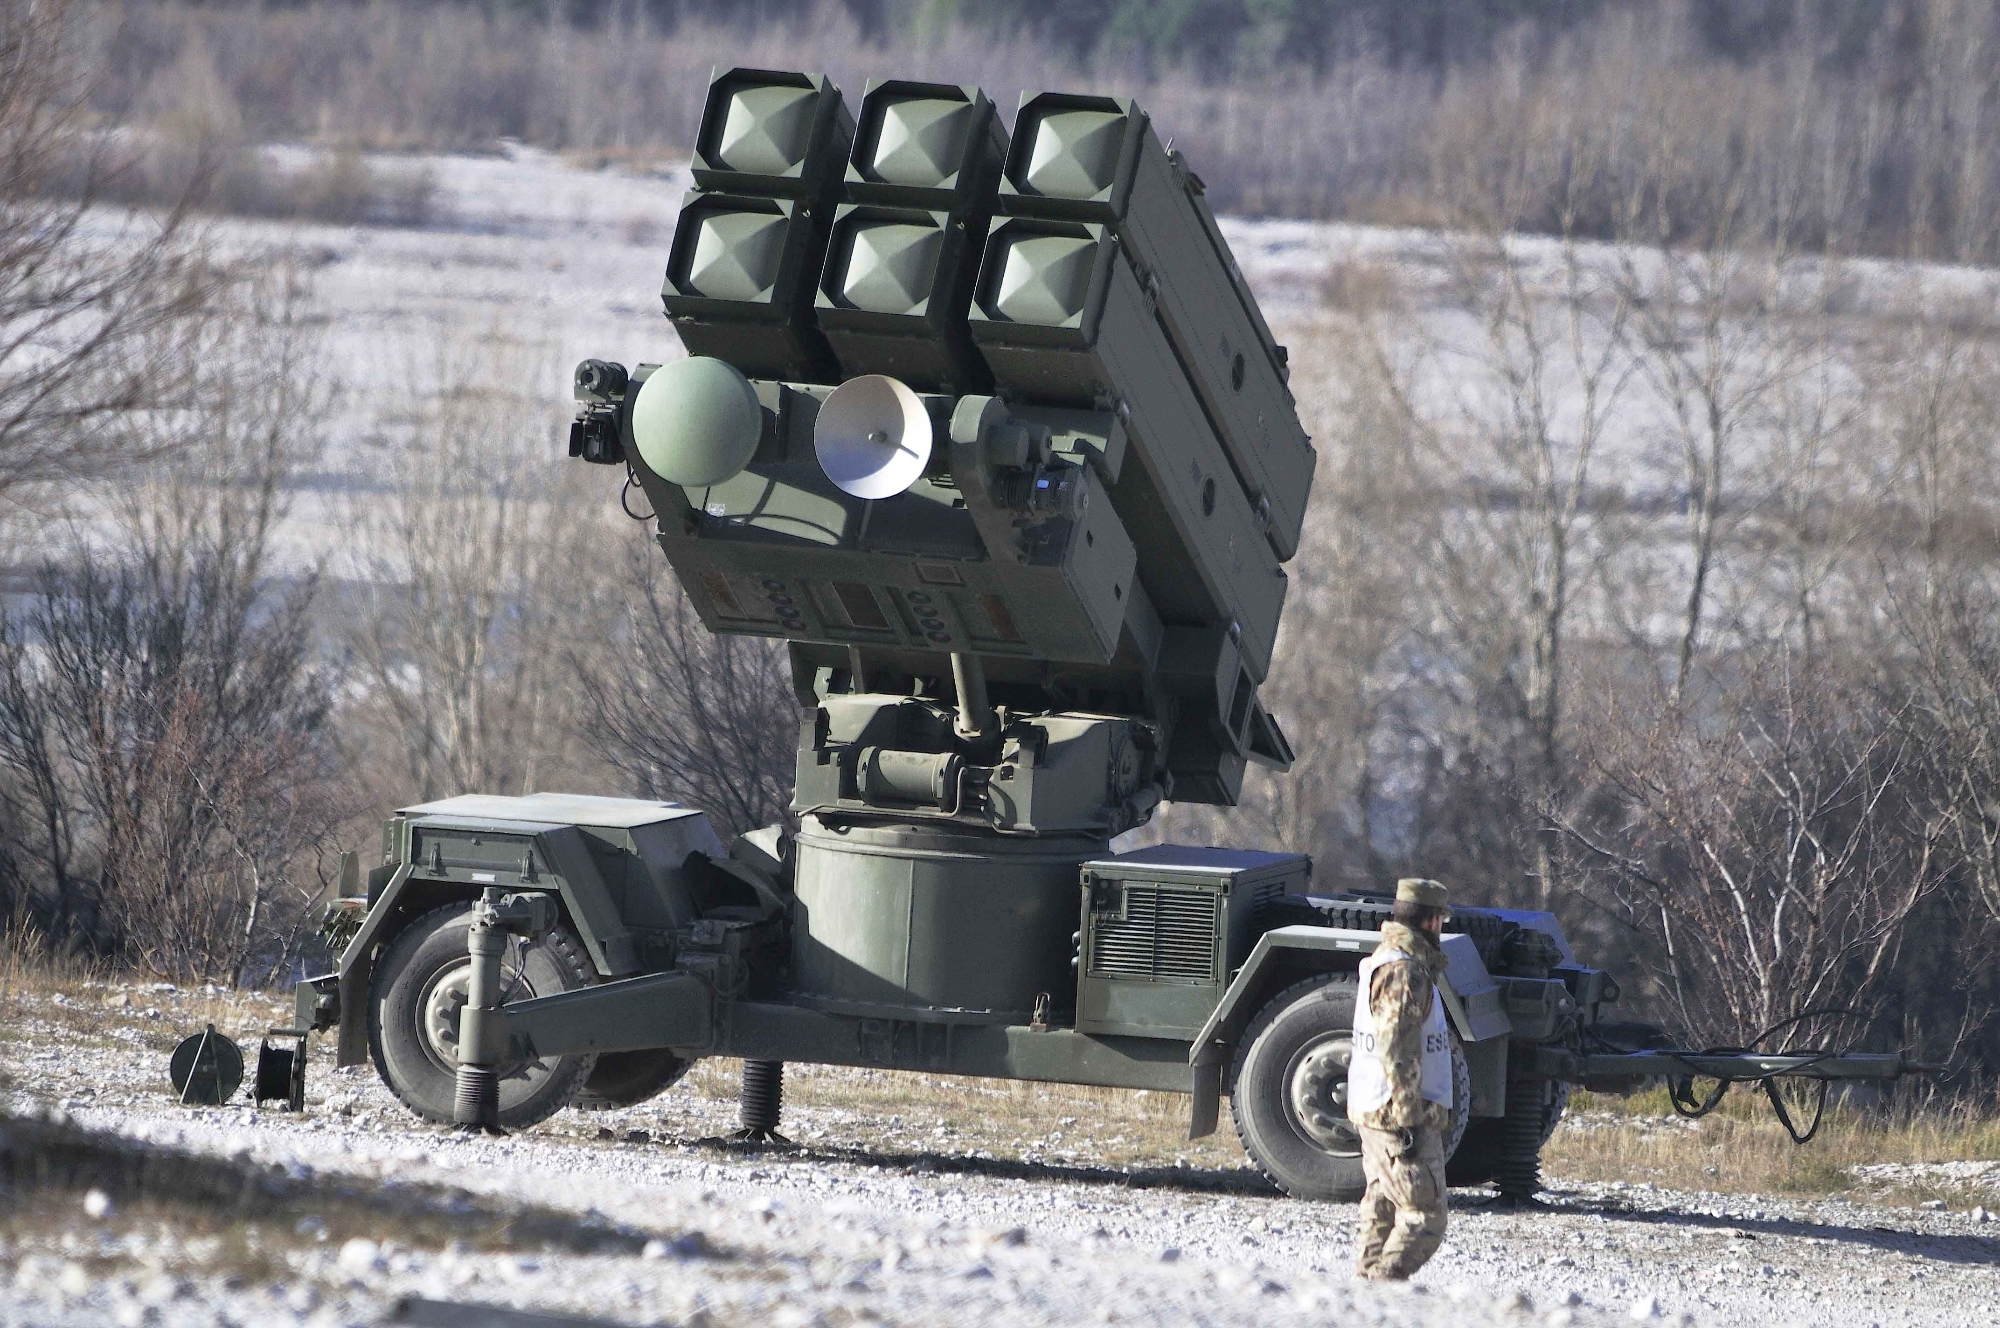 Sistemi di difesa aerea Aspide, sistema di difesa aerea Hawk, ATGM e lanciagranate: La Spagna concede all'Ucraina un nuovo pacchetto di aiuti militari